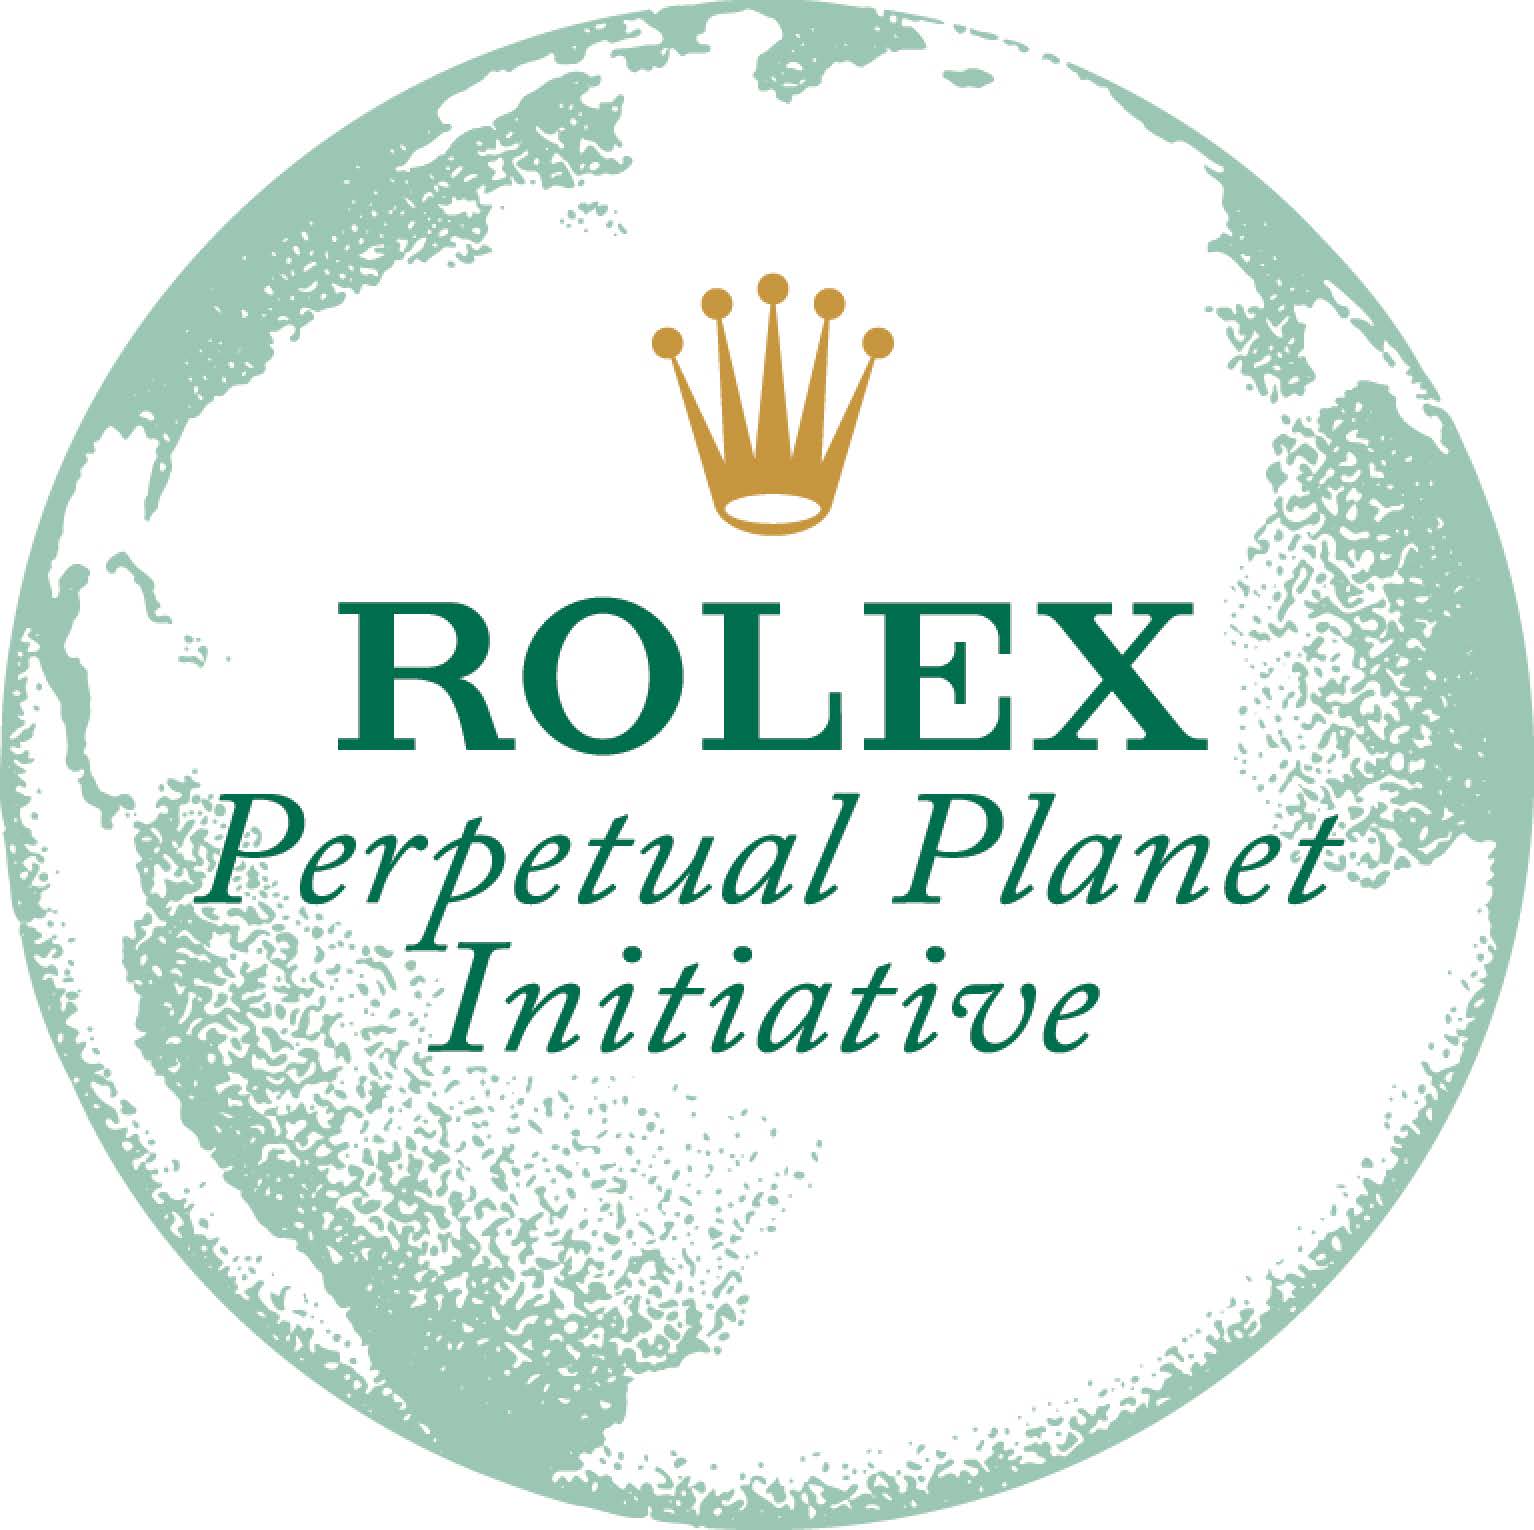 Dans le cadre de son initiative Perpetual Planet, Rolex annonce